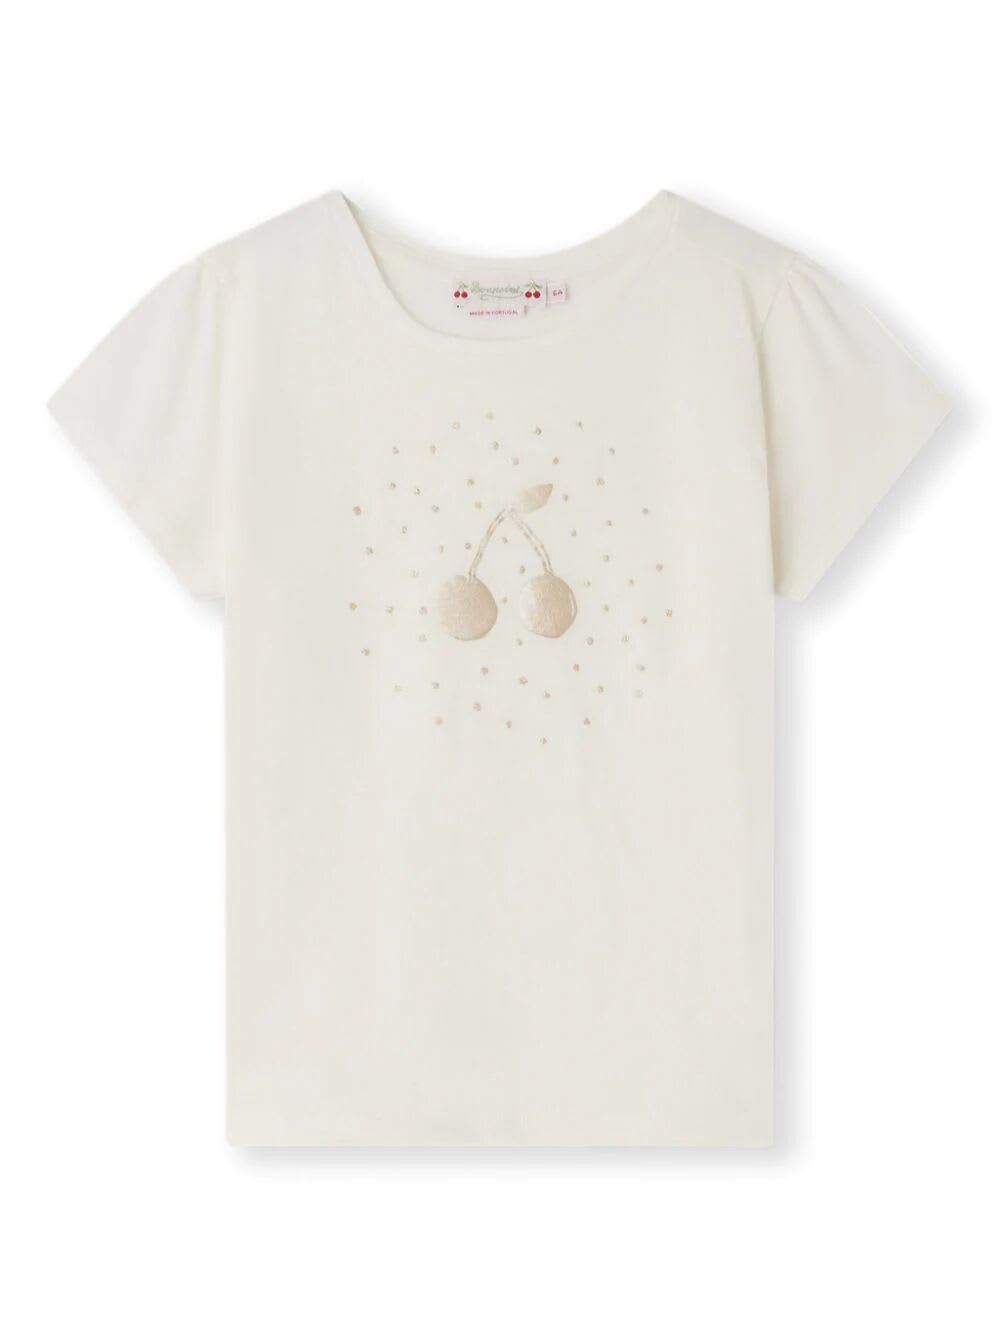 Bonpoint Kids' T-shirt Capricia In White Milk